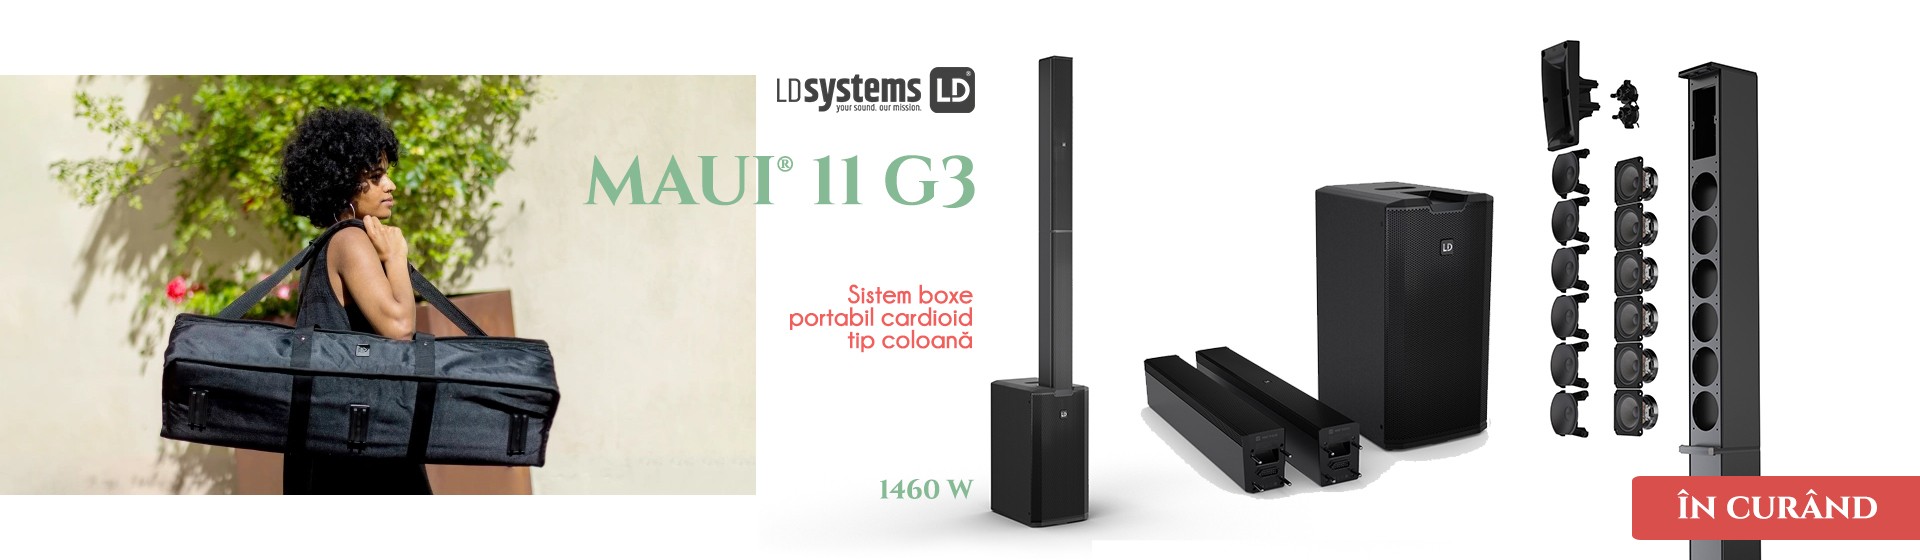 LD Systems Maui 11 G3